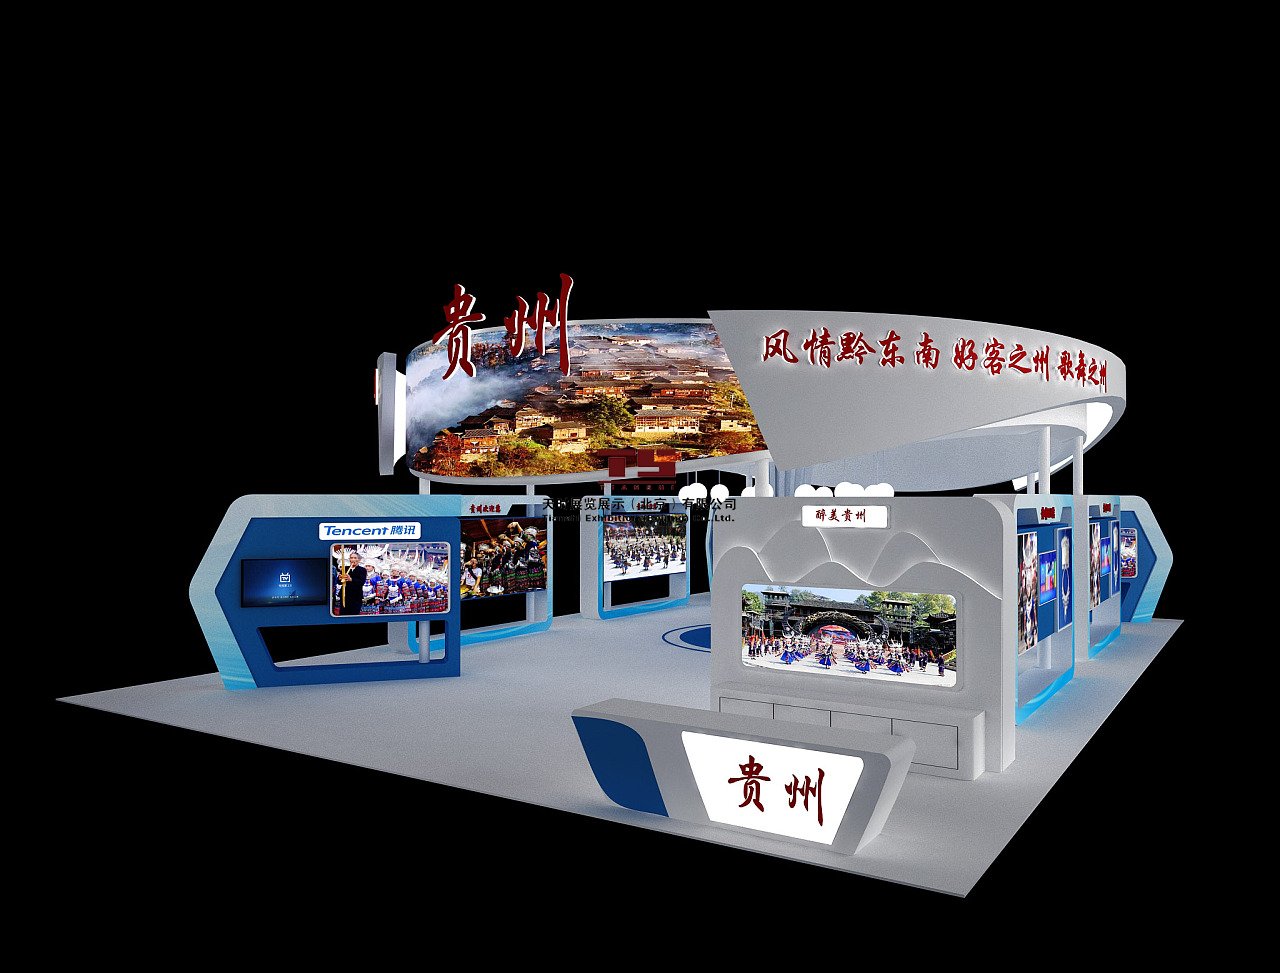 上海展览馆展会信息 